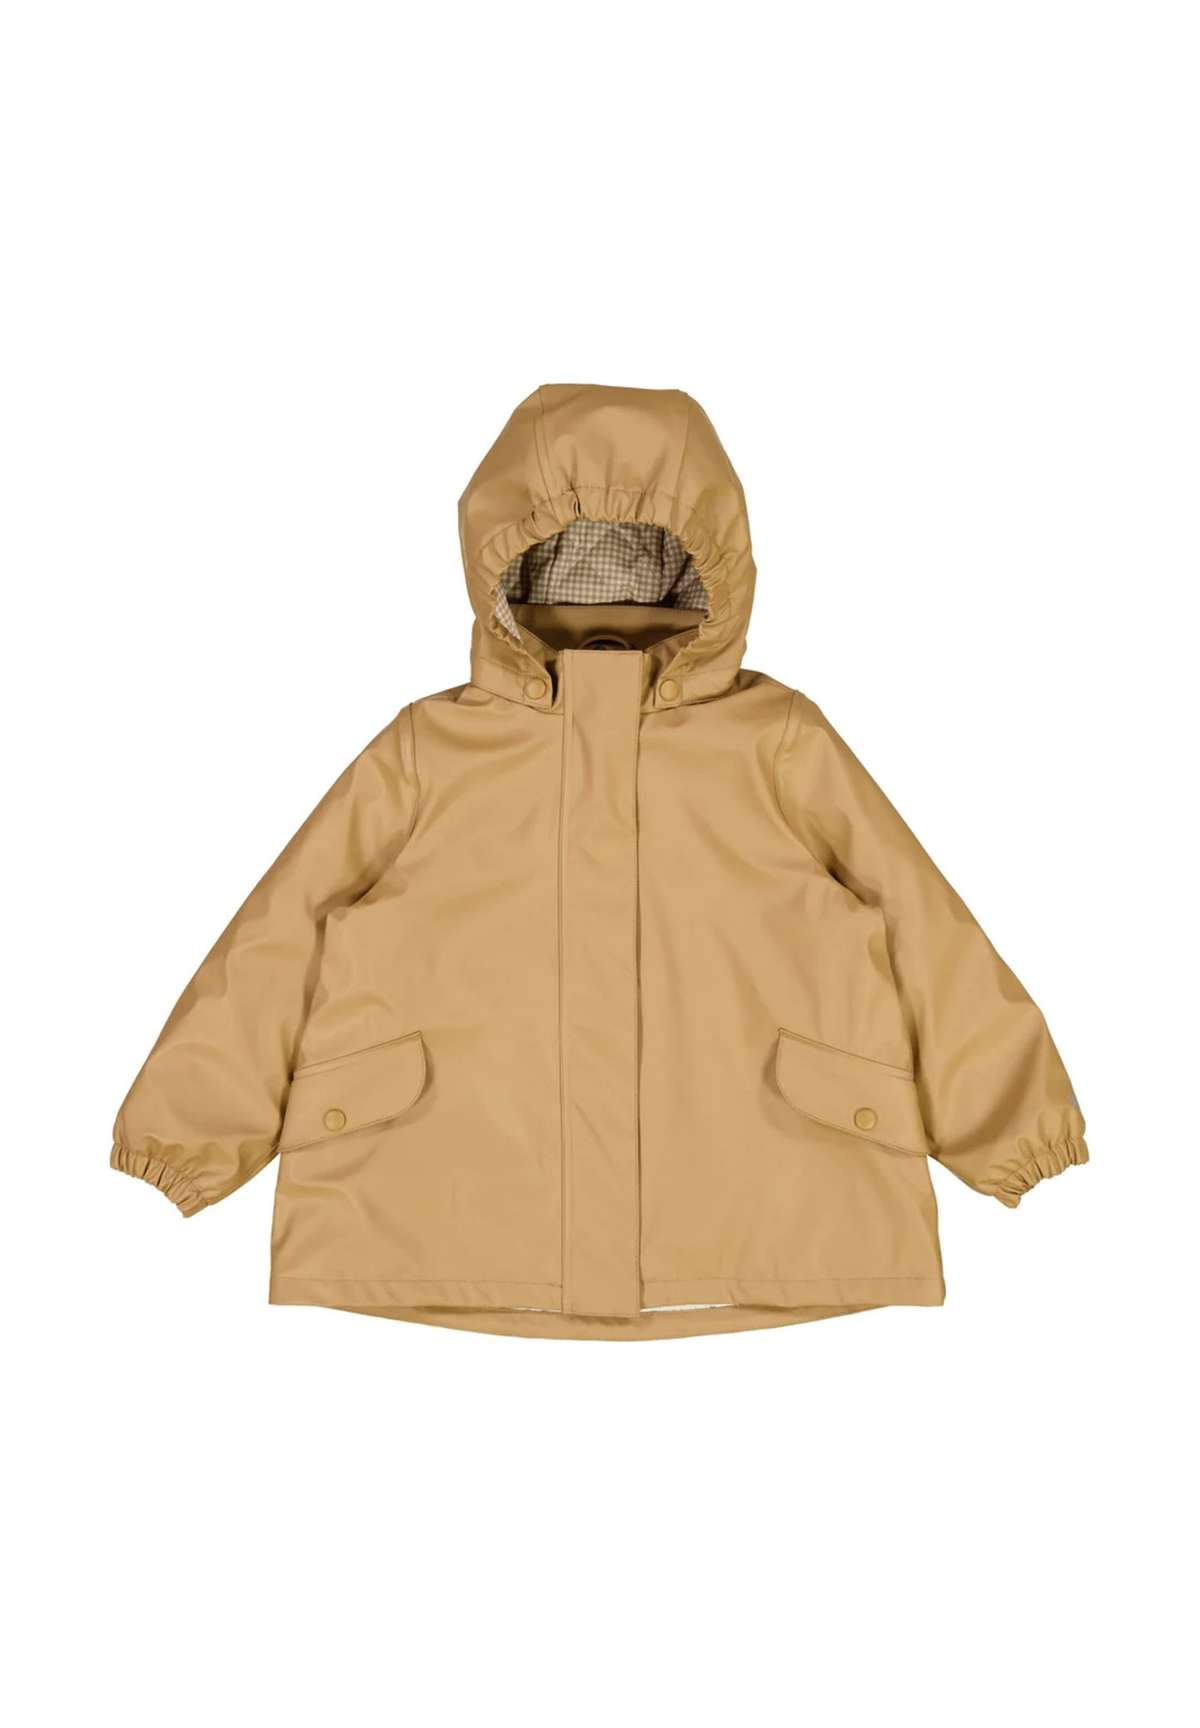 Куртка от дождя и грязи, с капюшоном, датский дизайн /...